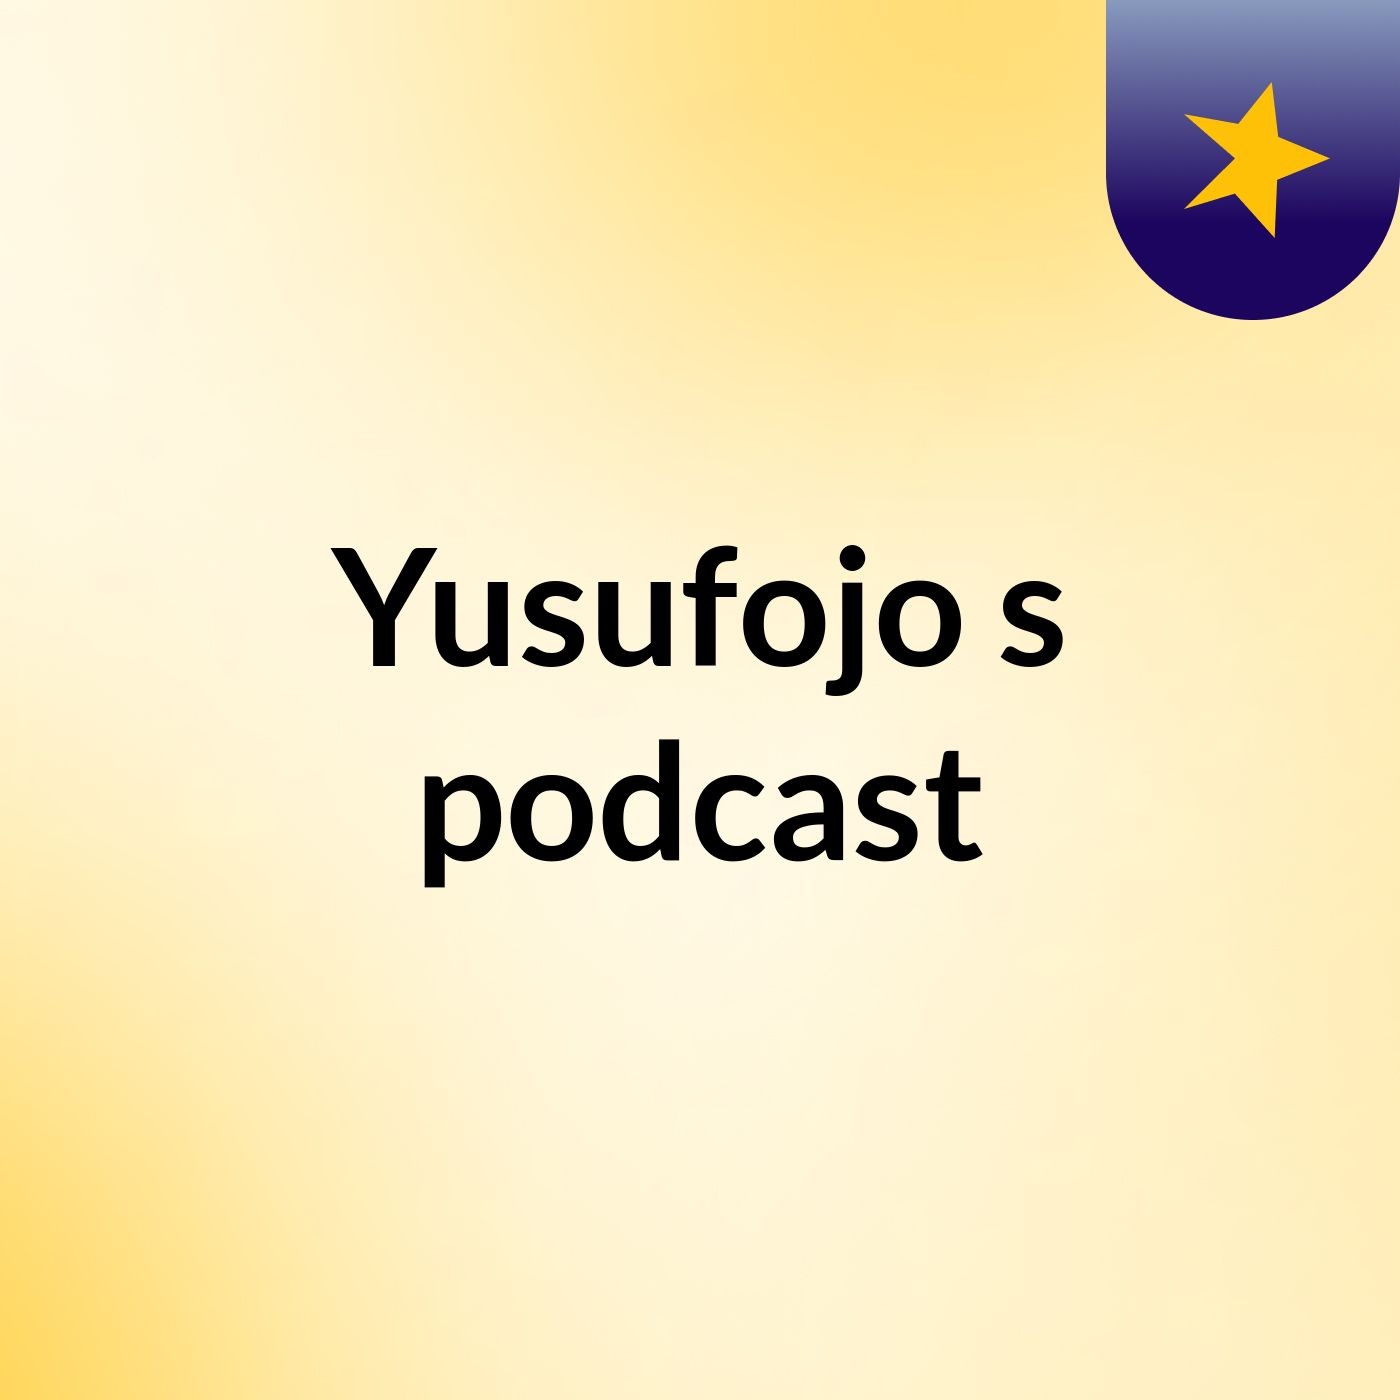 Yusufojo's podcast